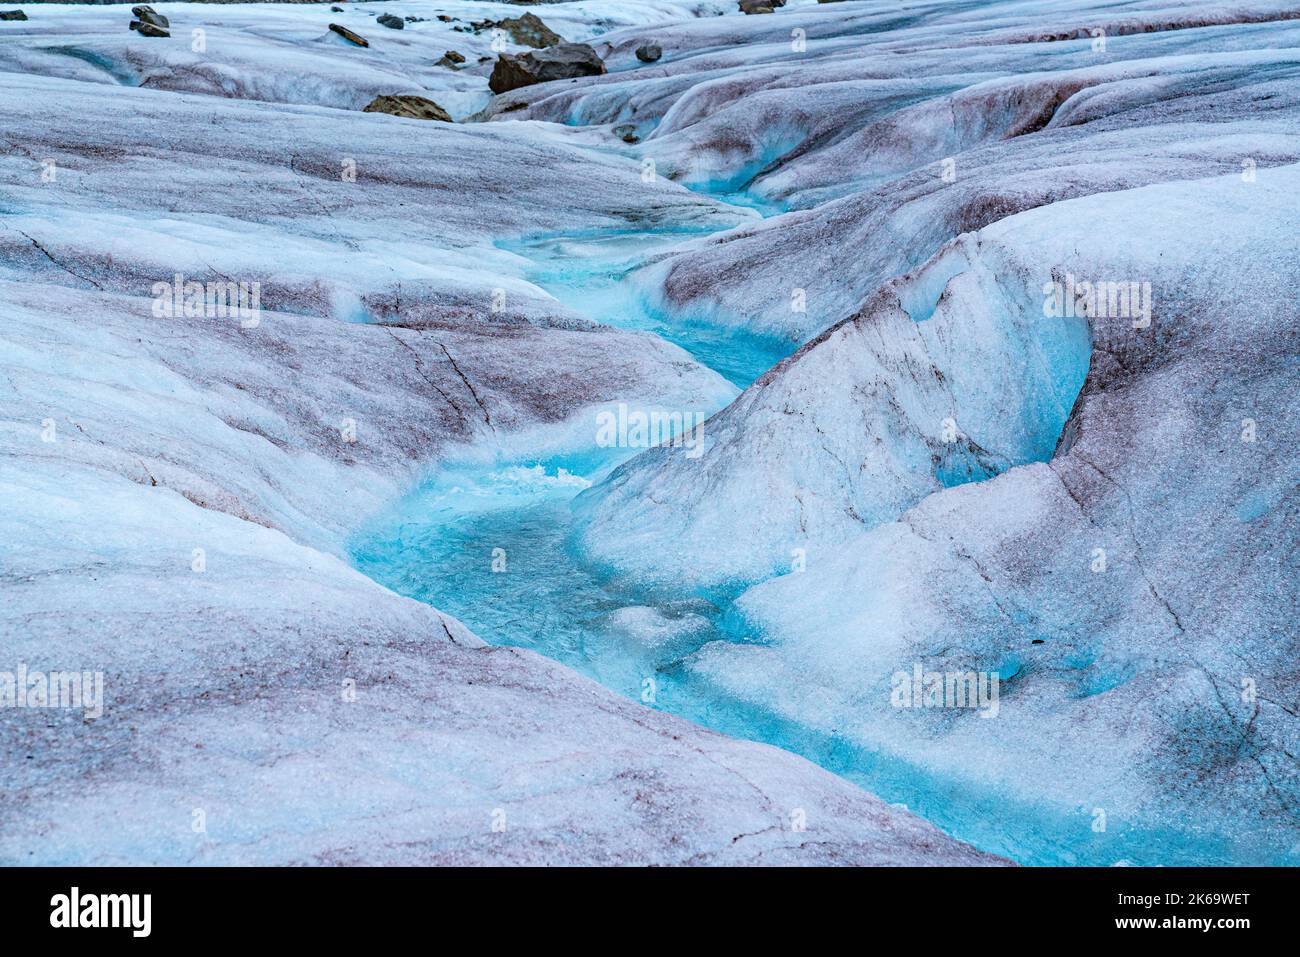 Das schmelzende Gletschereis im Mendenhall Glacier in Alaska bildet einen gewundenen Strom aus kristallklarem blauem Wasser Stockfoto